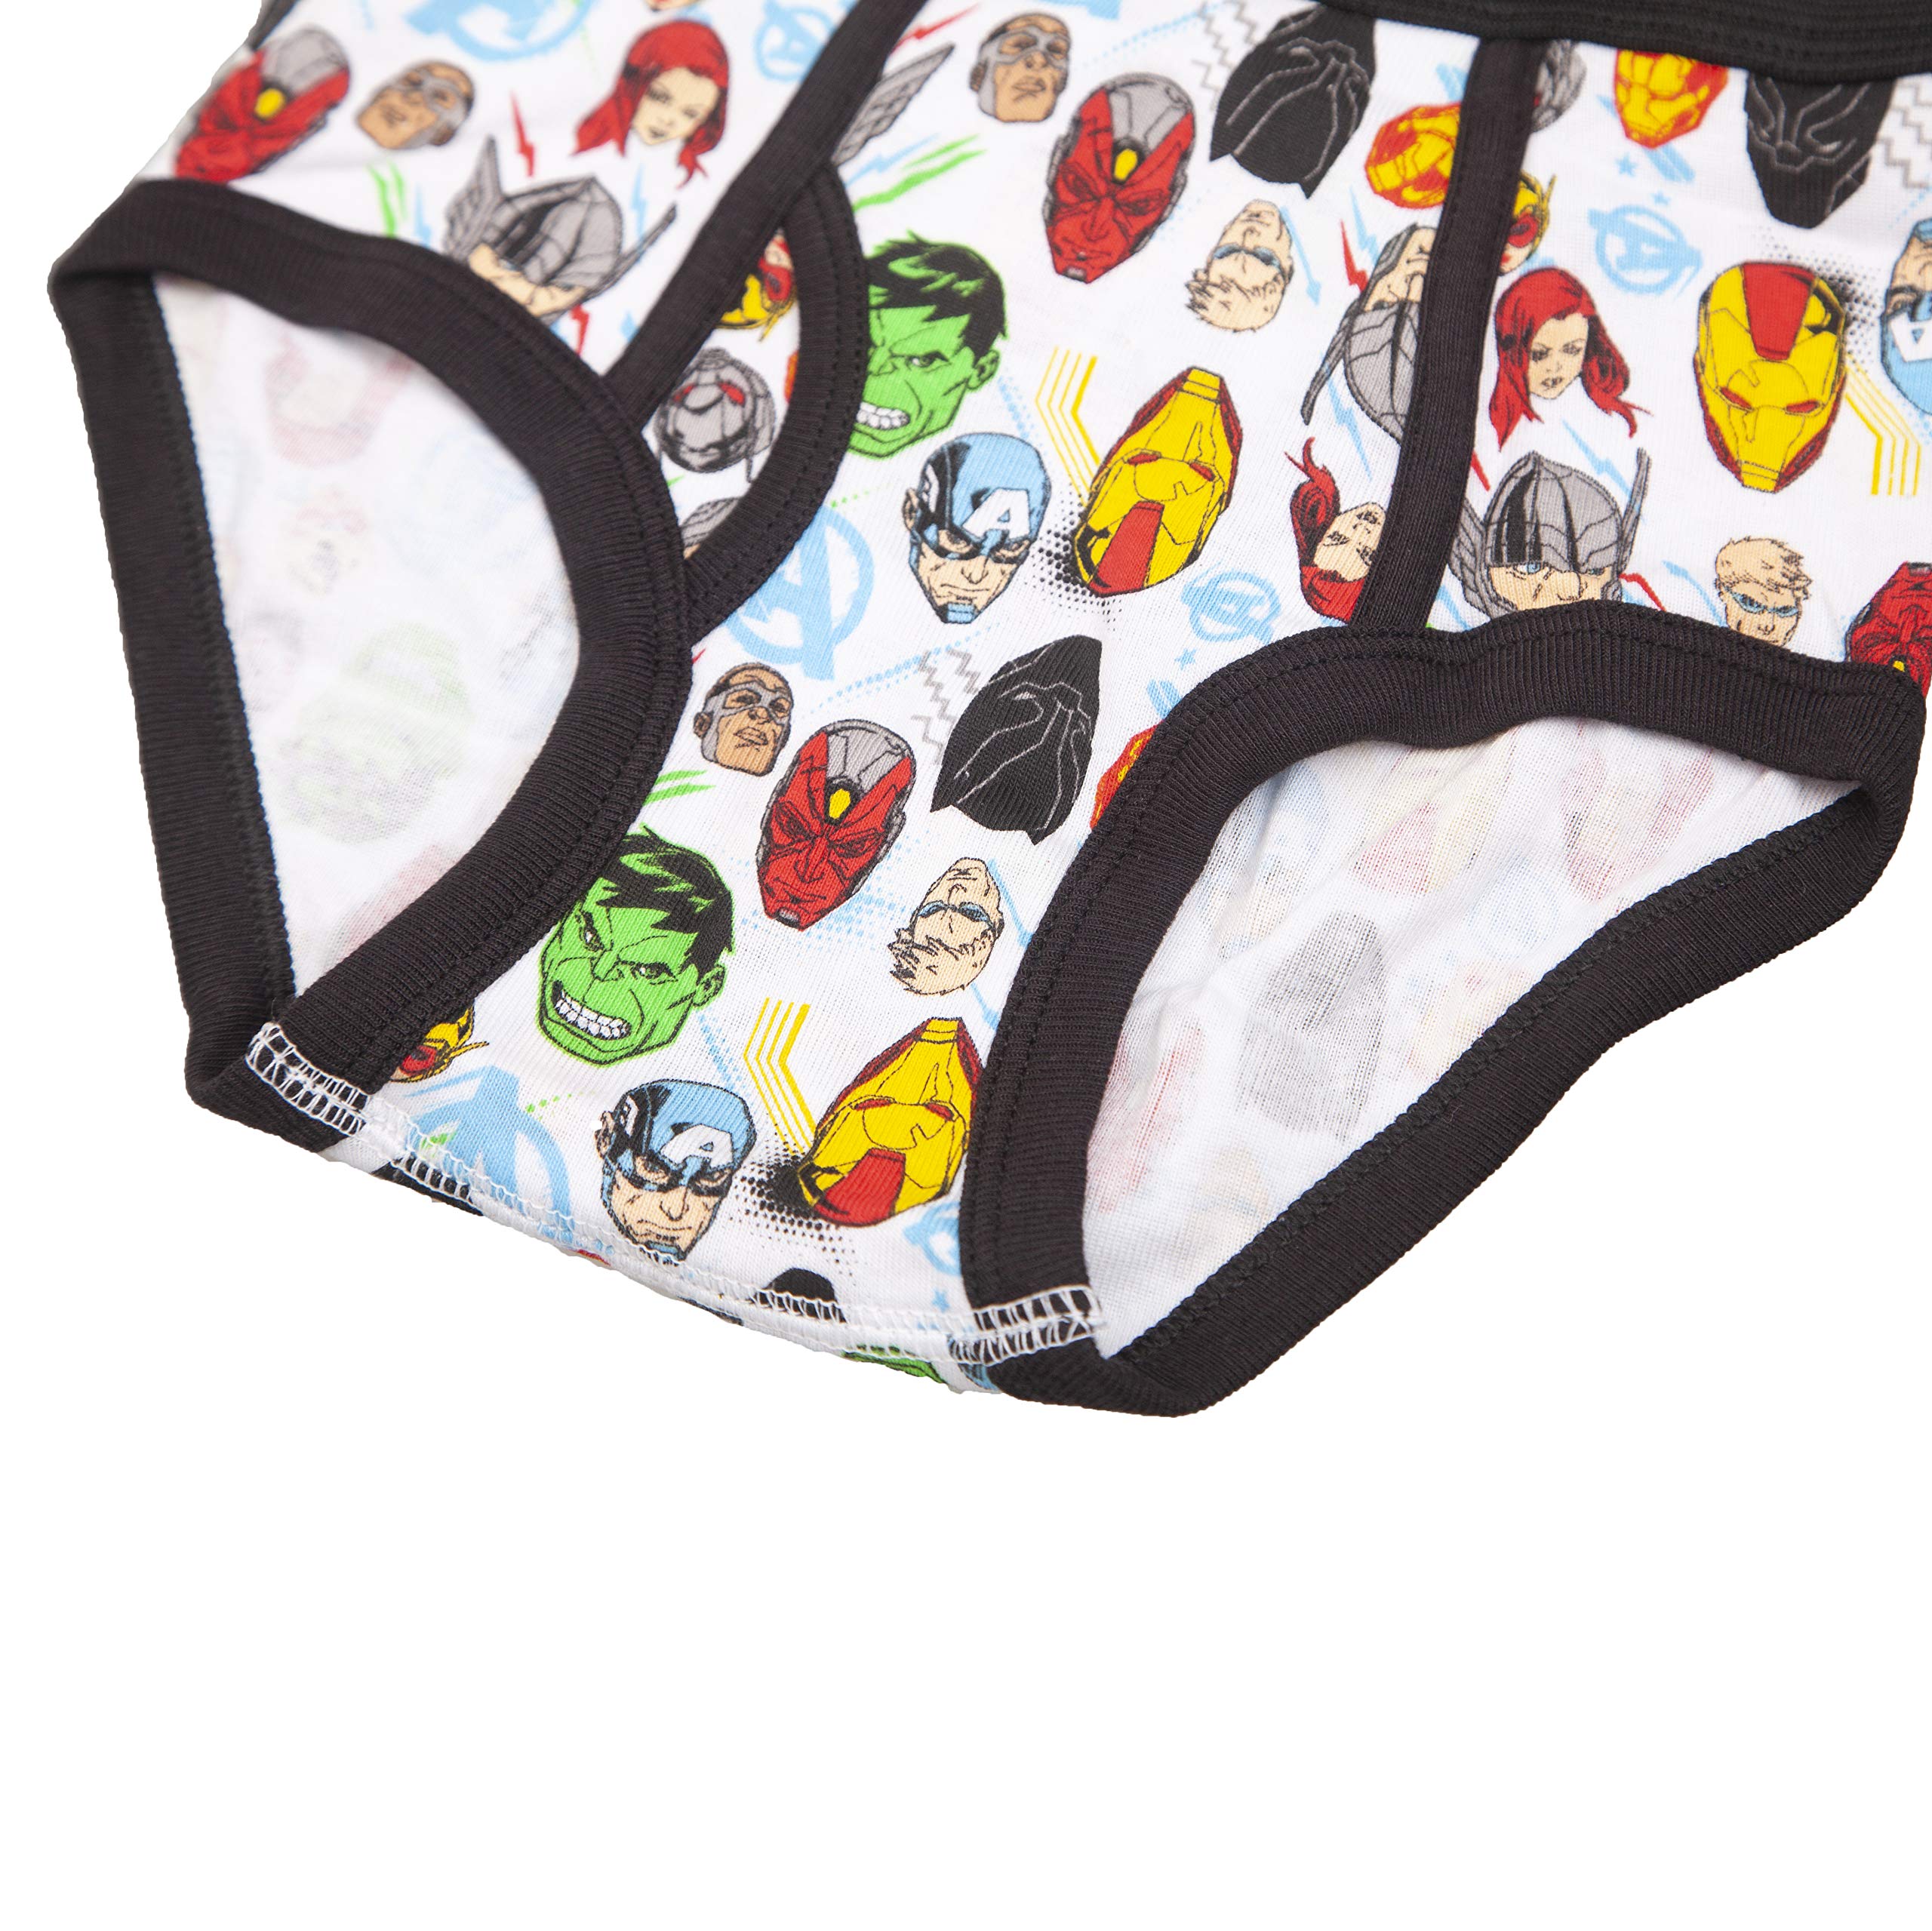 Marvel Boys' Hero Avengers Underwear Multipacks